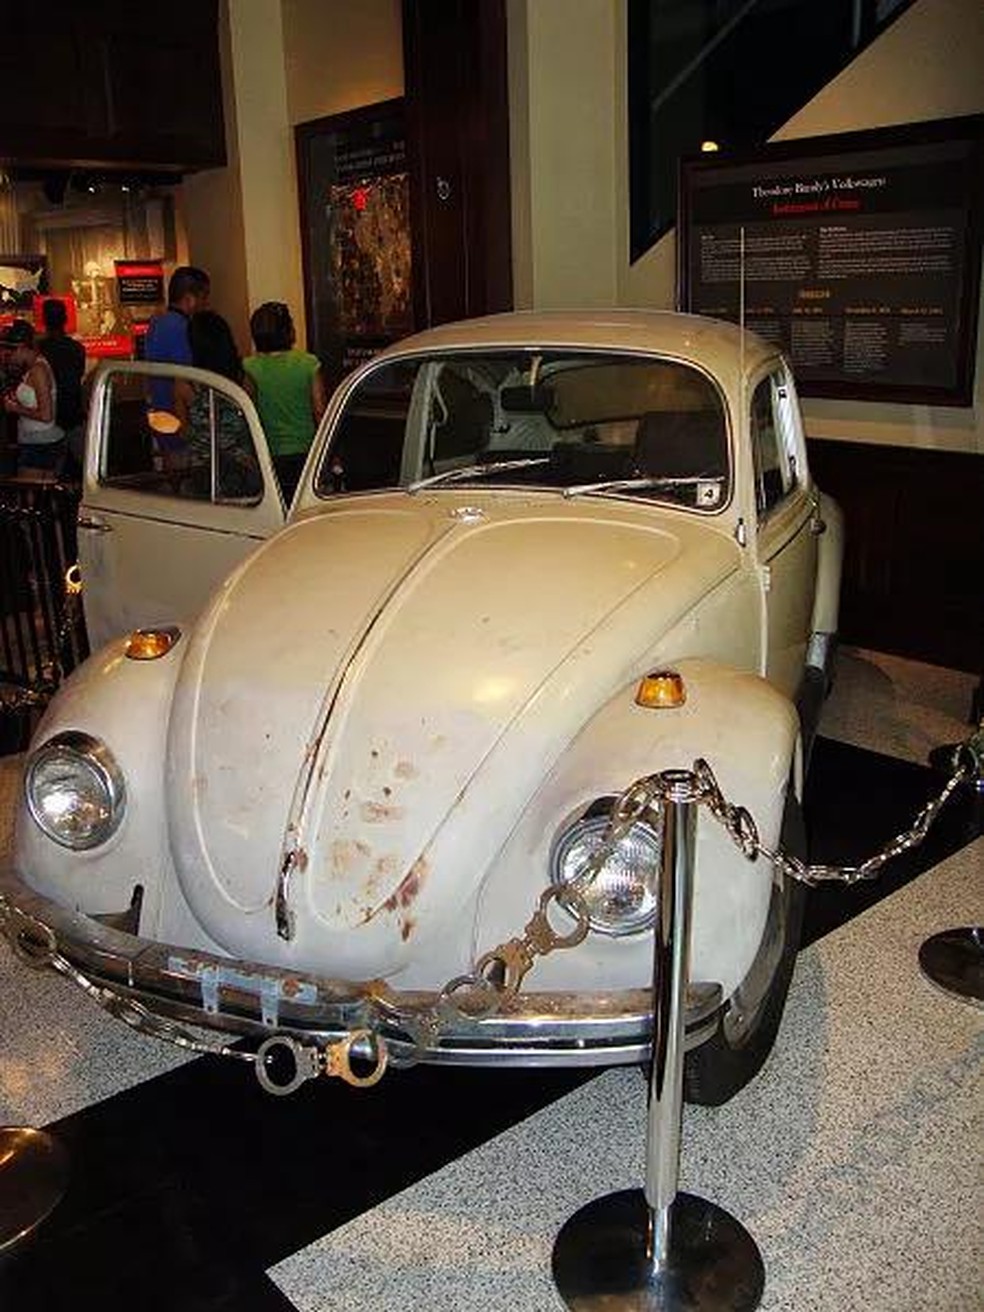 Volkswagen Beetle 1968 de Ted Bundy no qual ele cometeu muitos de seus crimes. Veículo em exposição no extinto Museu Nacional de Crime e Castigo (EUA) (Foto: Wikimedia Commons) — Foto: Galileu